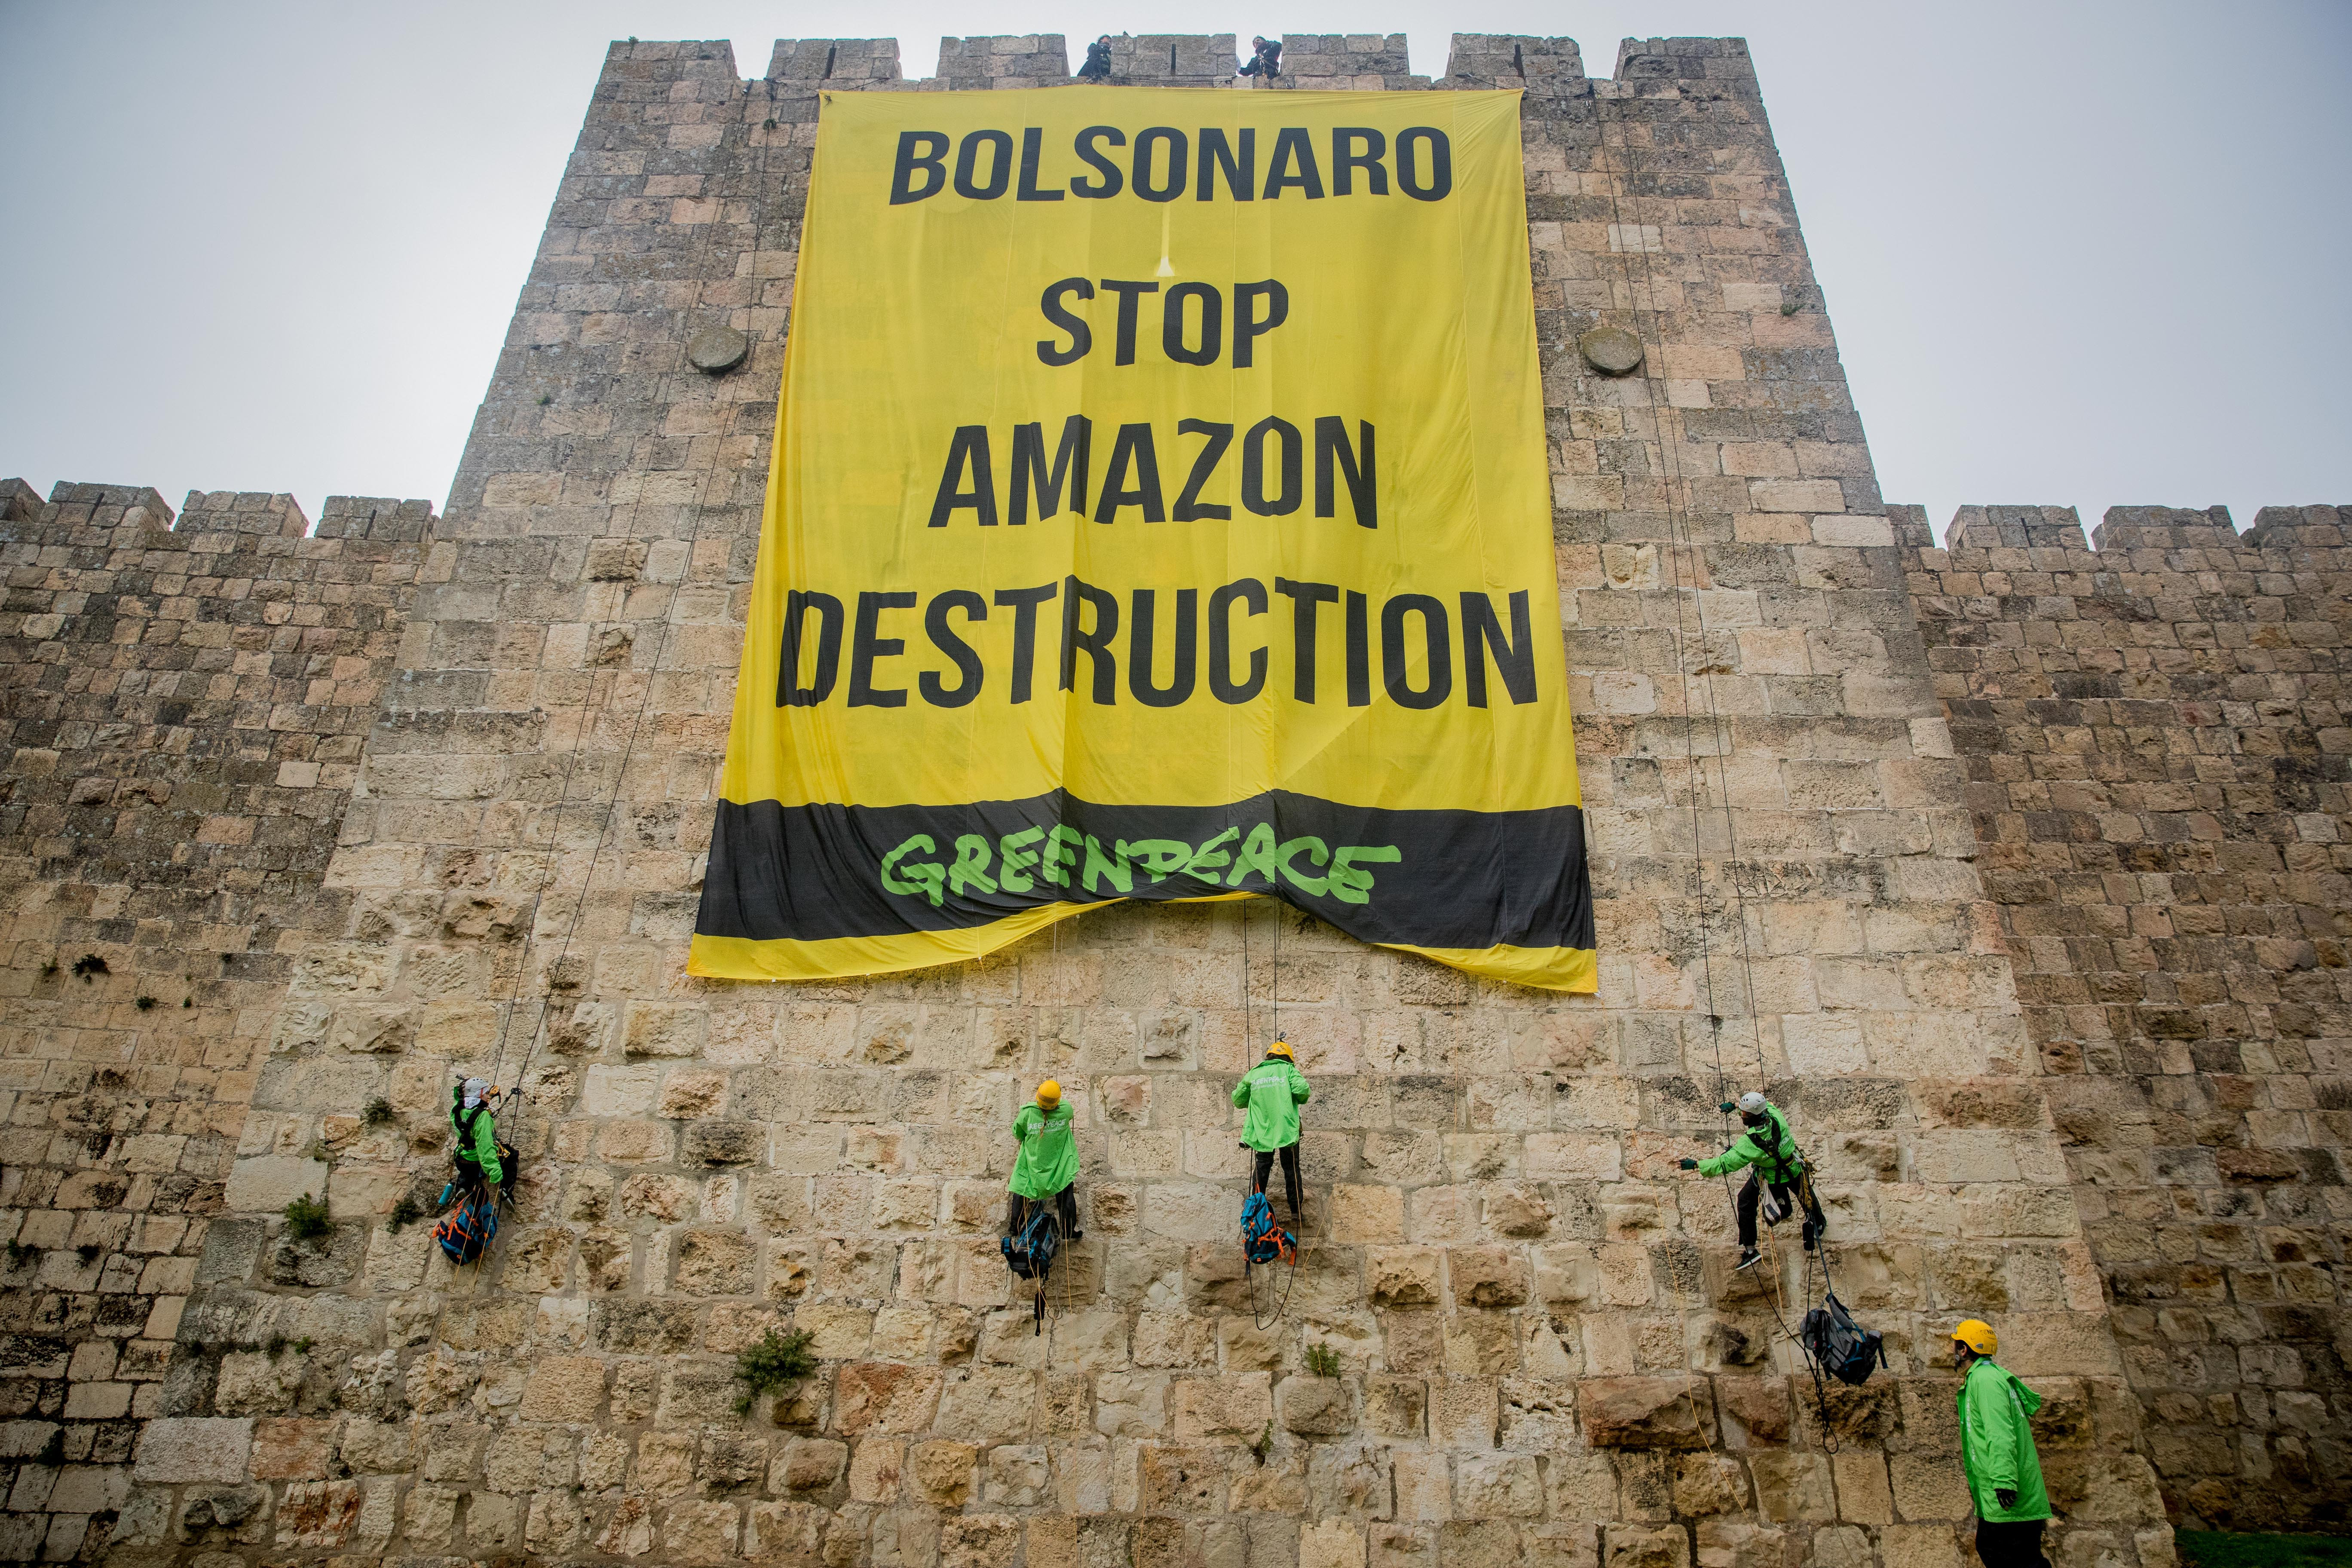 "בולסונרו, תעצור את הרס האמזונס": מחאה של פעילי גרינפיס בירושלים בזמן ביקורו של נשיא ברזיל ז'איר בולסונרו בישראל, באפריל 2019 (צילום: יונתן סינדל/פלאש90)